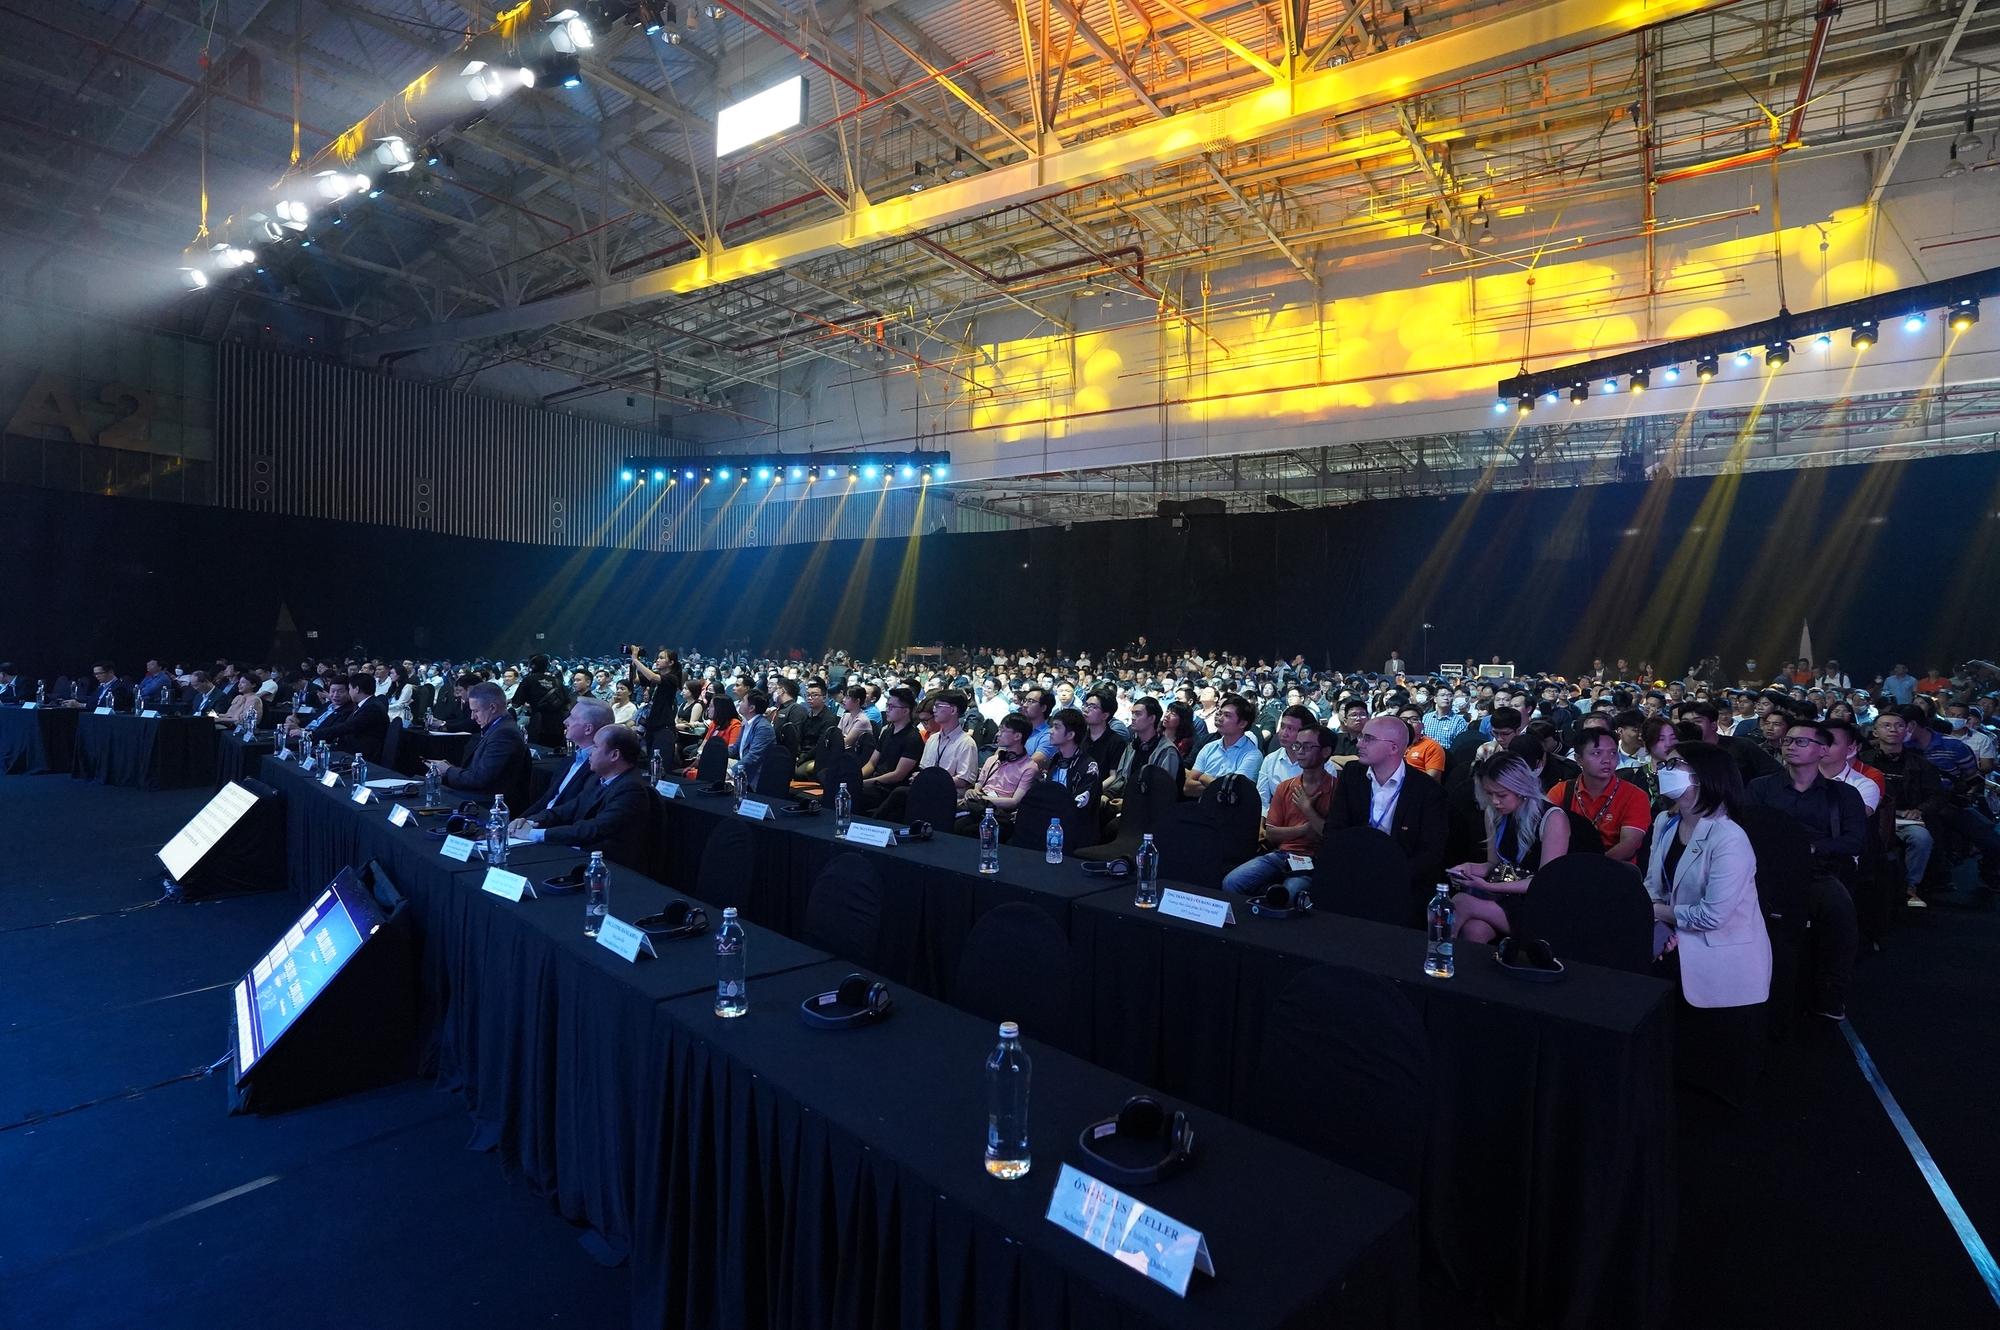 Hàng nghìn người tham dự sự kiện công nghệ lớn nhất năm của FPT - Ảnh 1.